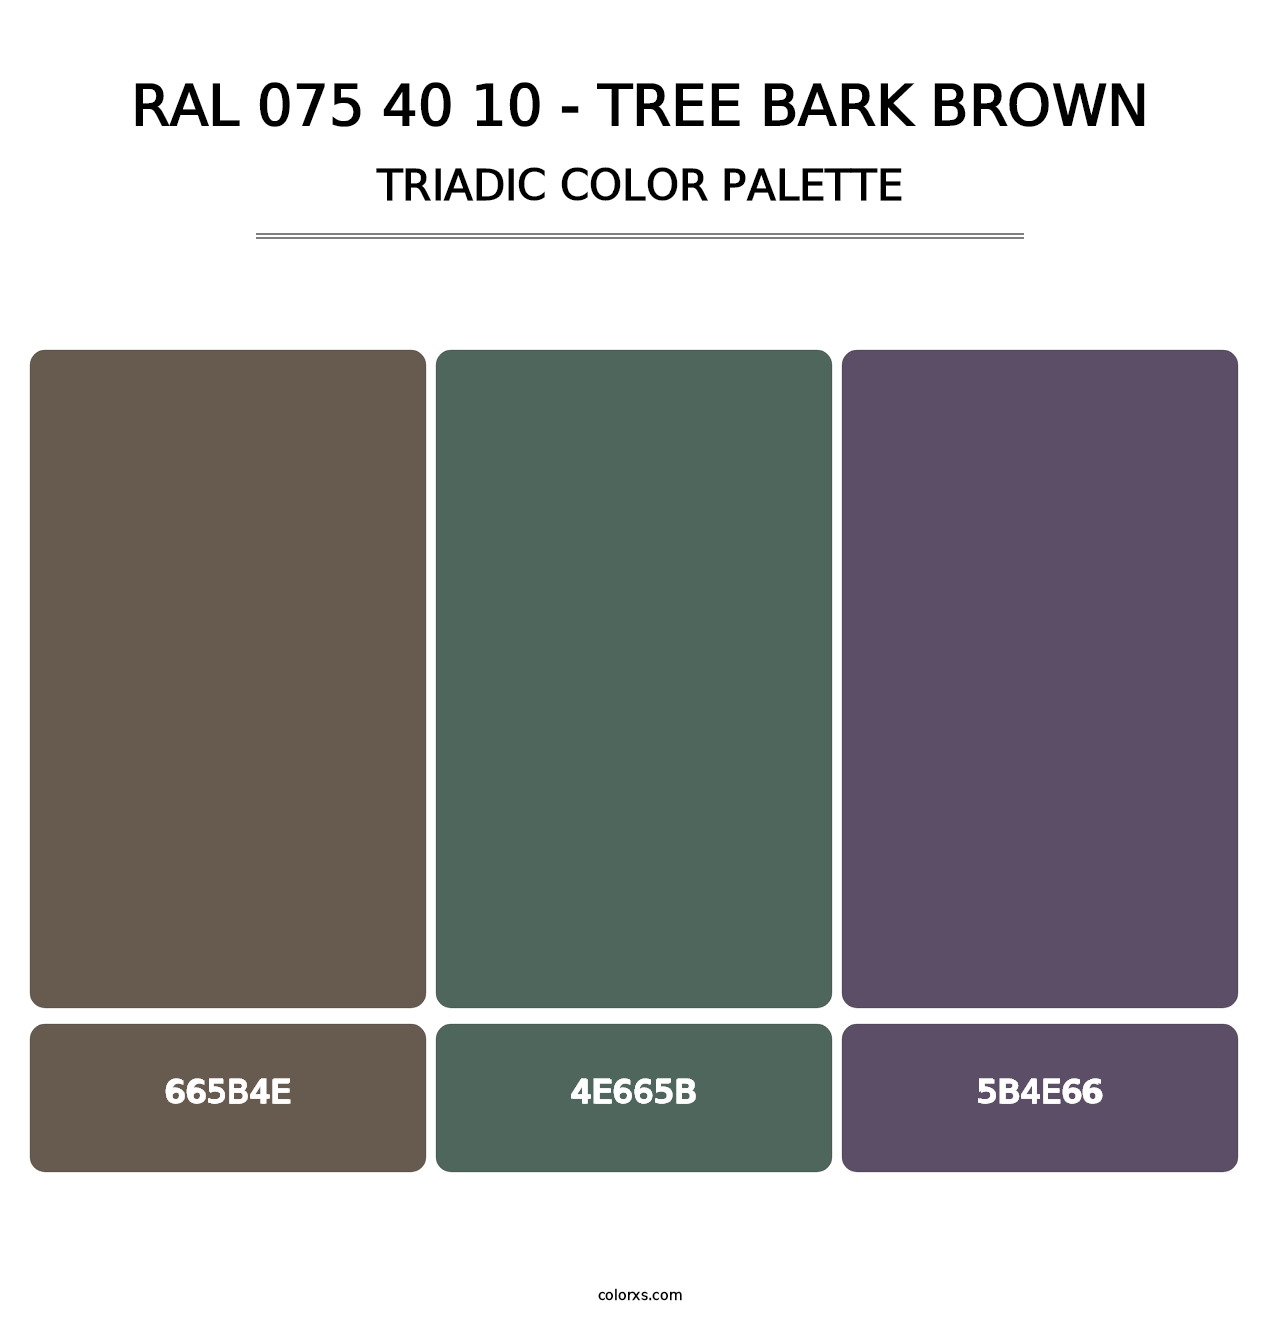 RAL 075 40 10 - Tree Bark Brown - Triadic Color Palette